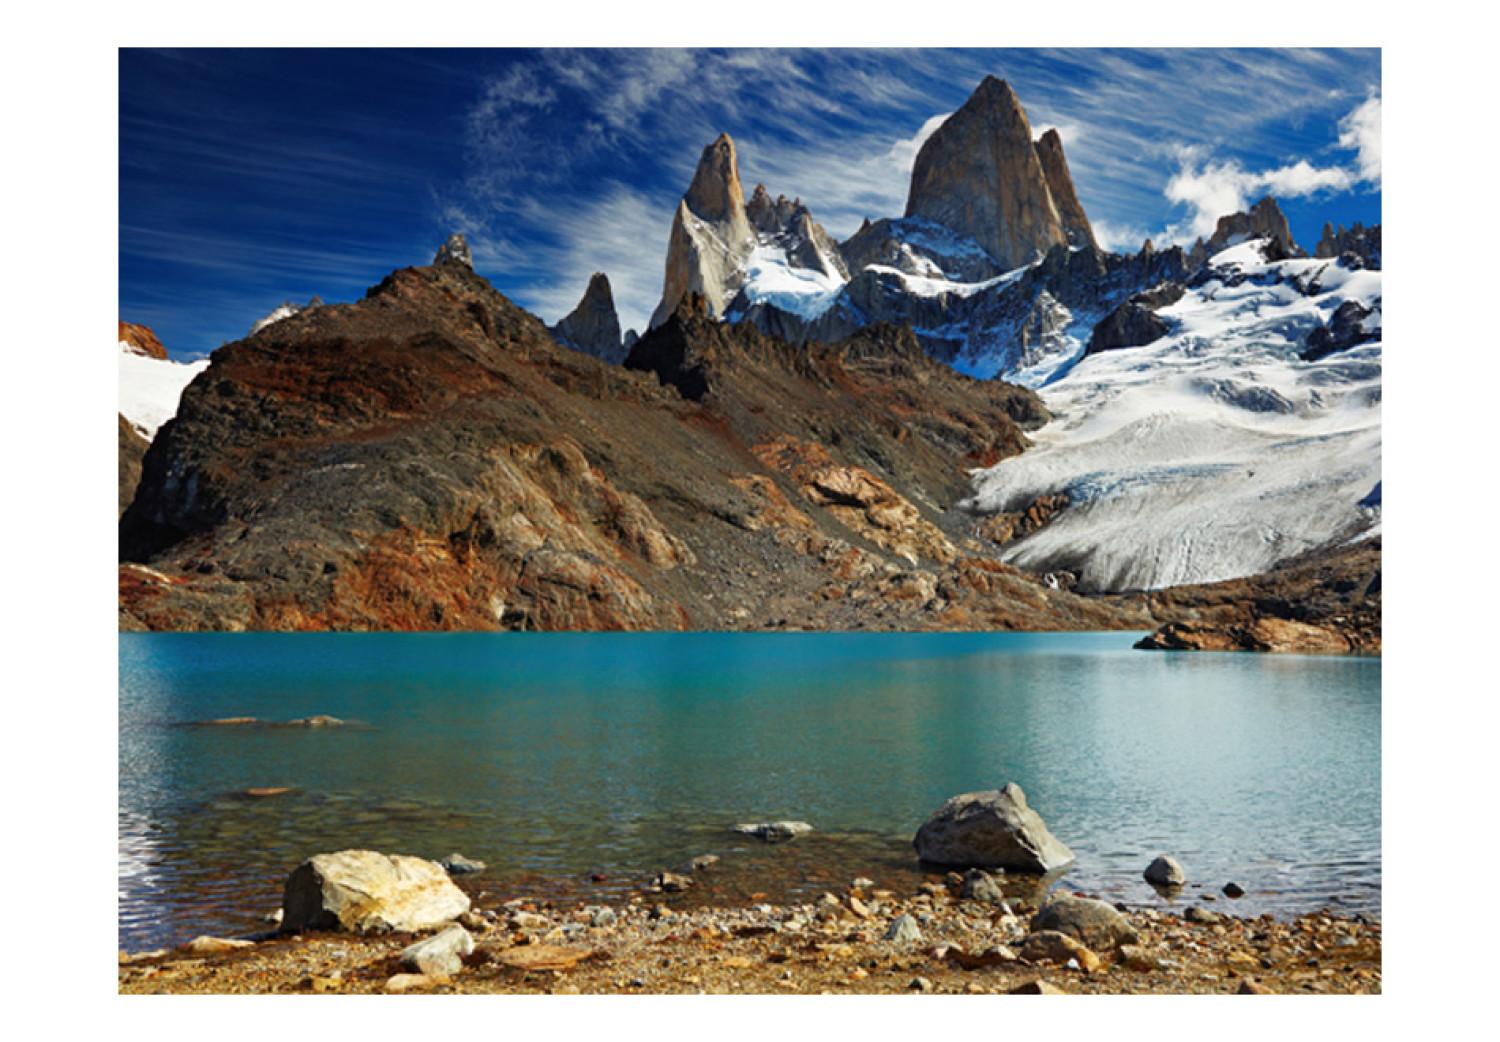 Fotomural decorativo Patagonia argentina - paisaje de montañas rocosas con lago en invierno